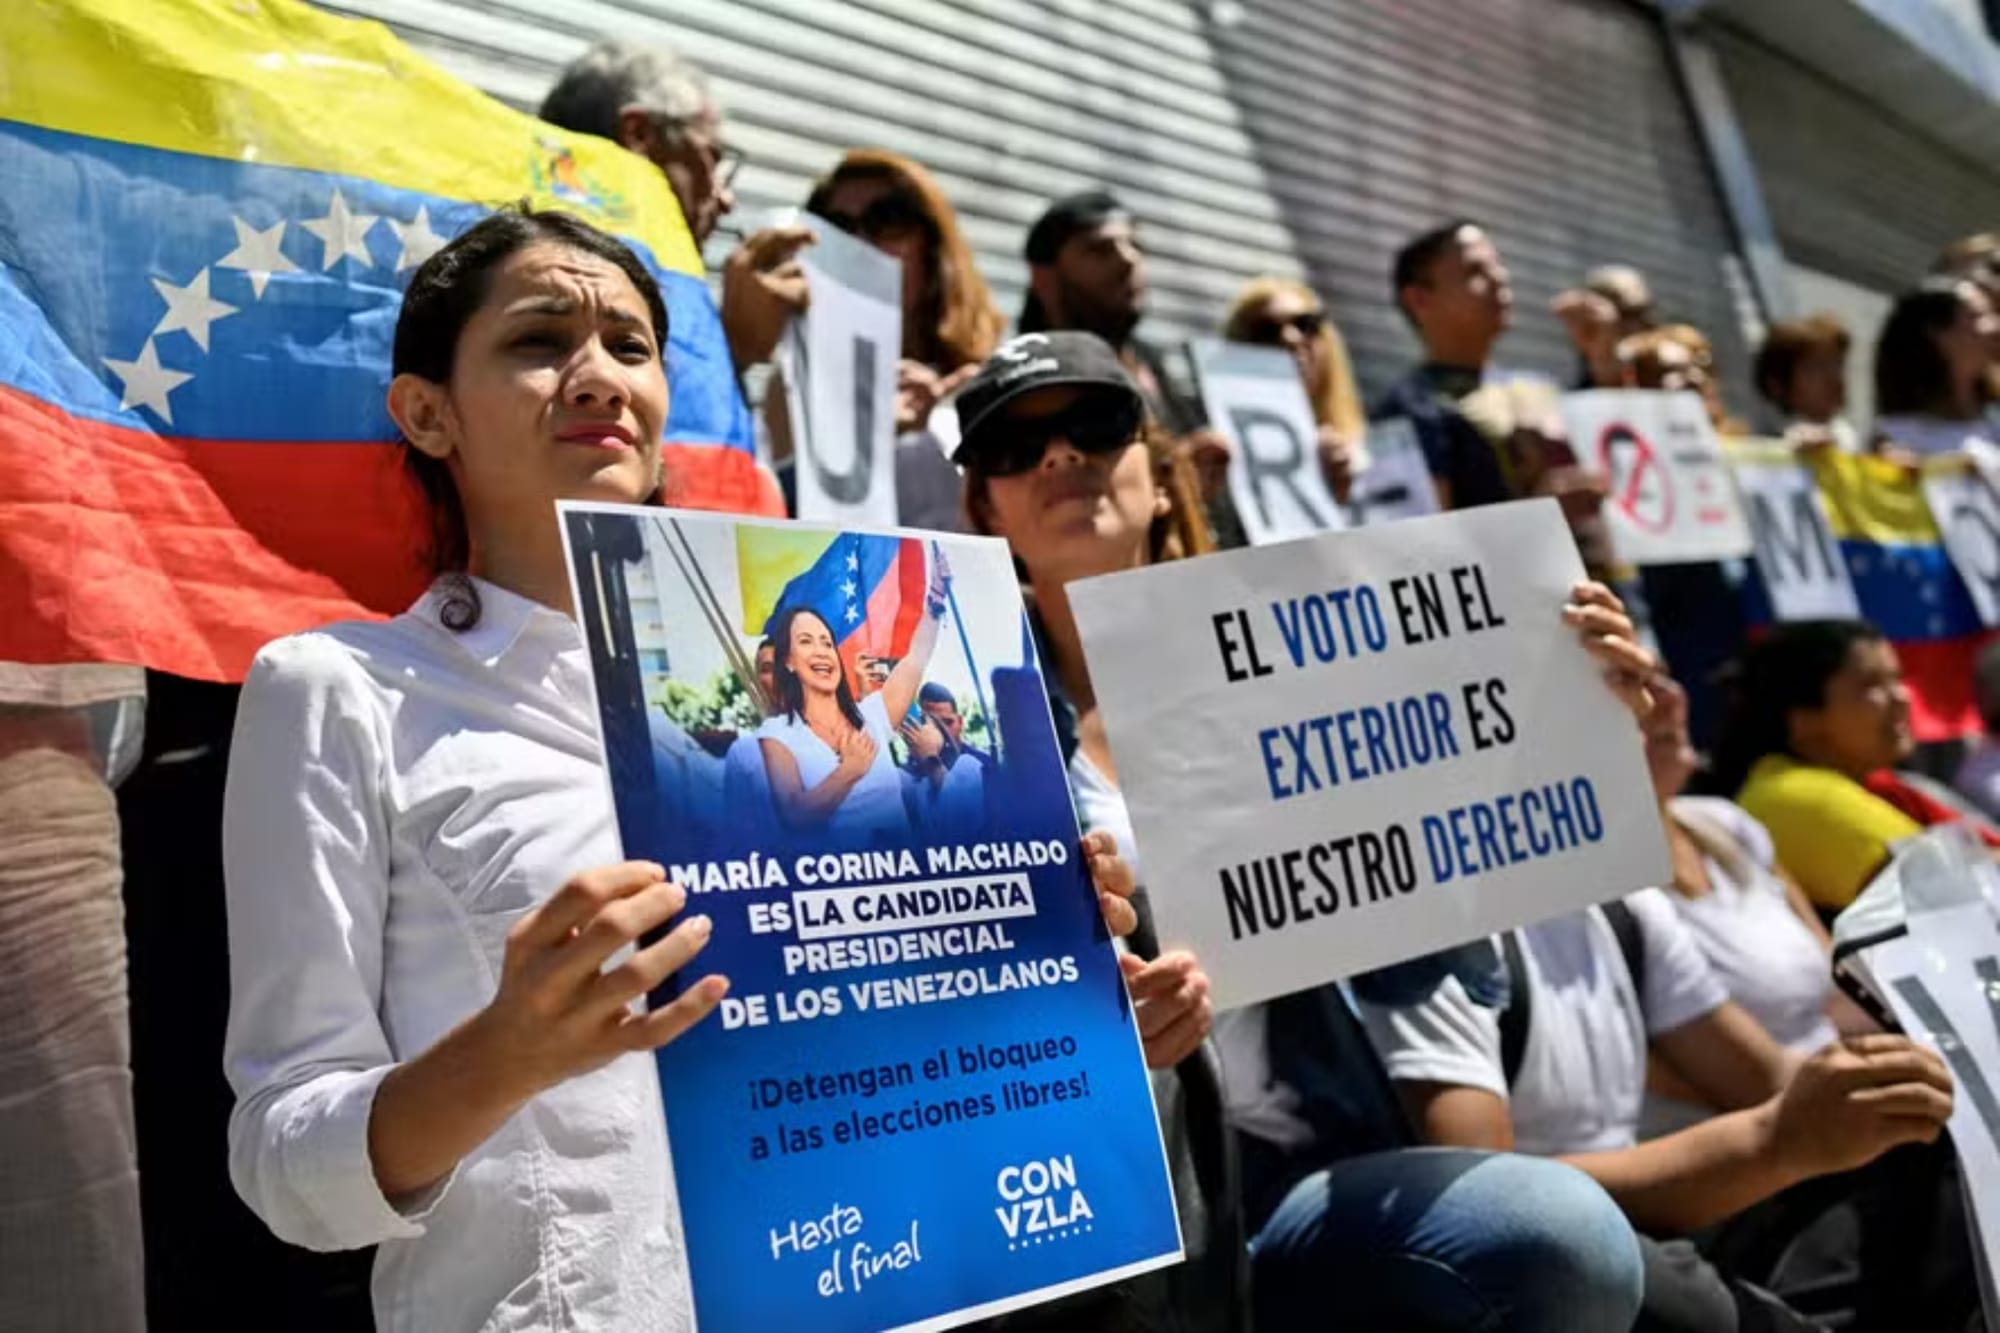 Protestos e greve de fome: venezuelanos no exterior dizem que são impedidos de realizar registro para votar nas eleições